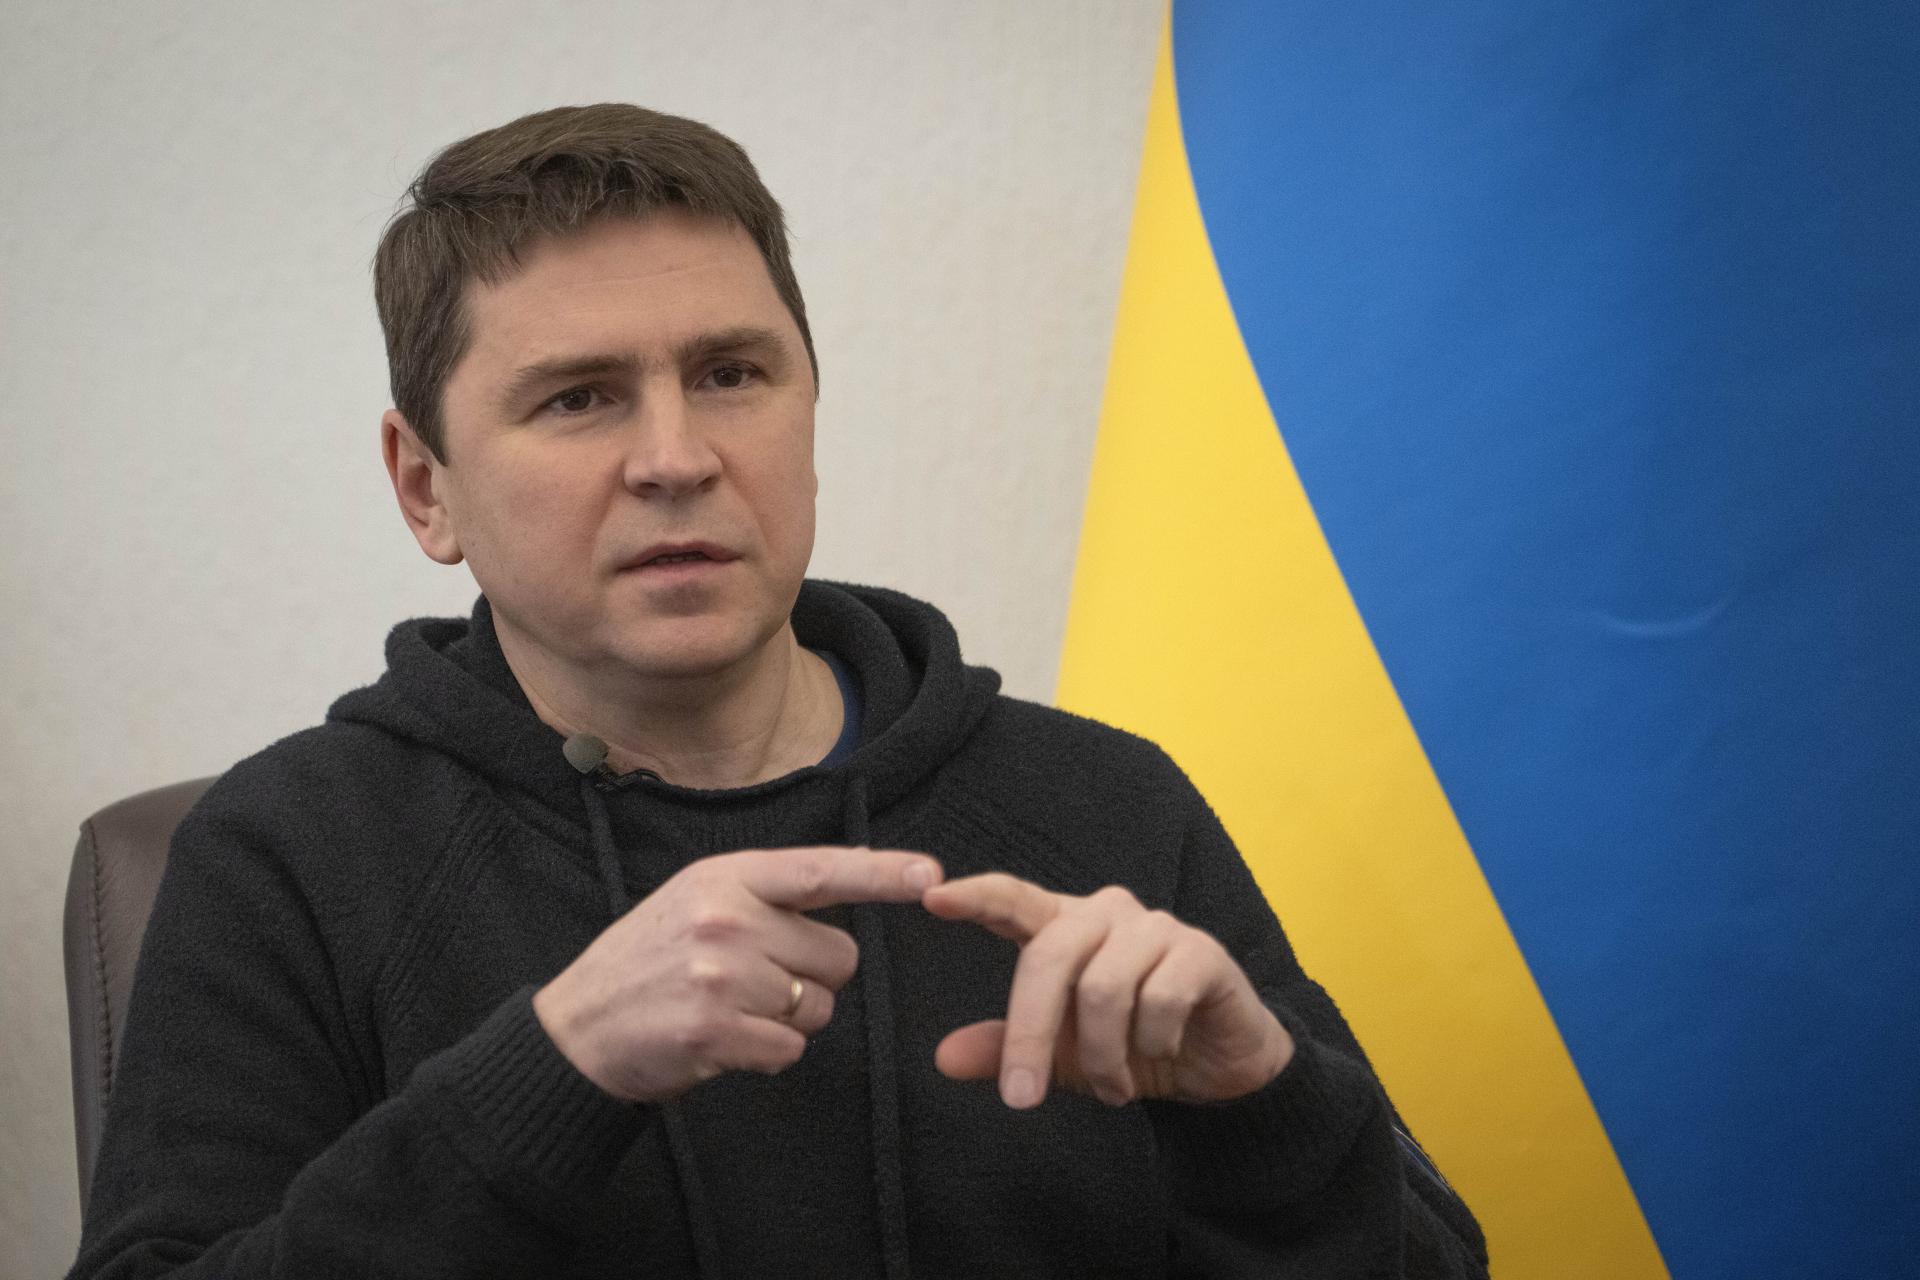 Tvrdenie Moskvy o narušení ruských hraníc z Ukrajiny a streľbe na civilistov je provokácia, tvrdí Kyjev